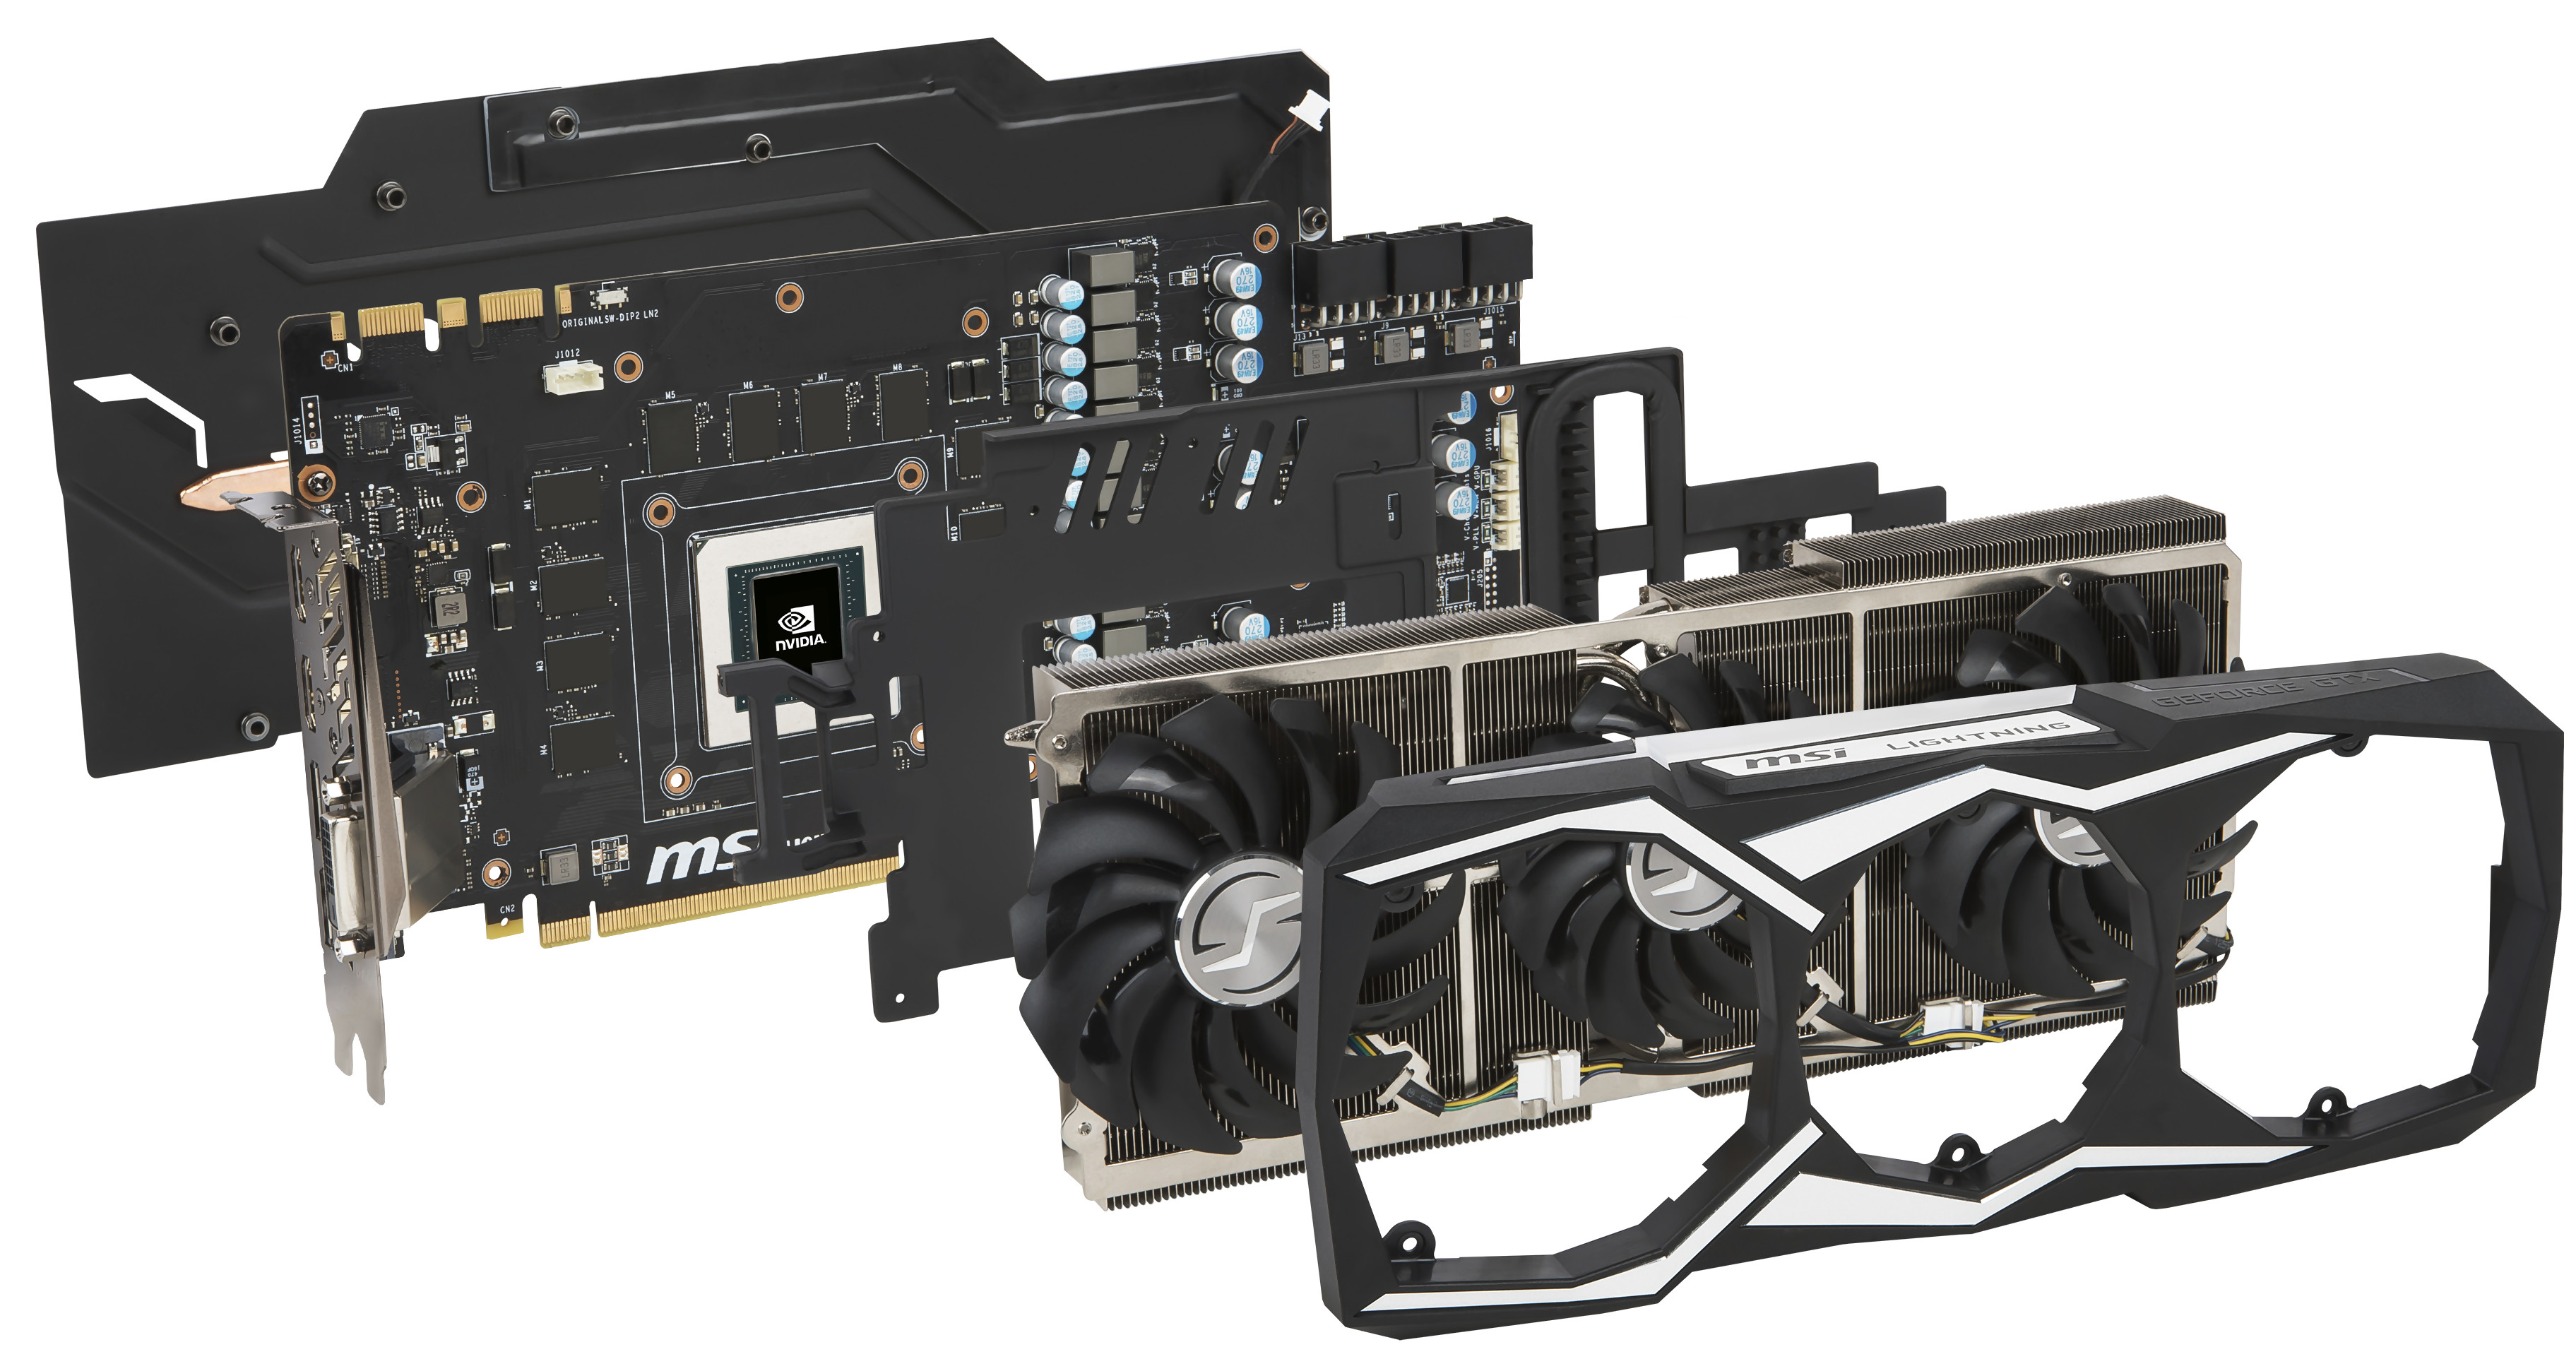 MSI dévoile une GeForce 1080 overclockée pour ses 30 ans